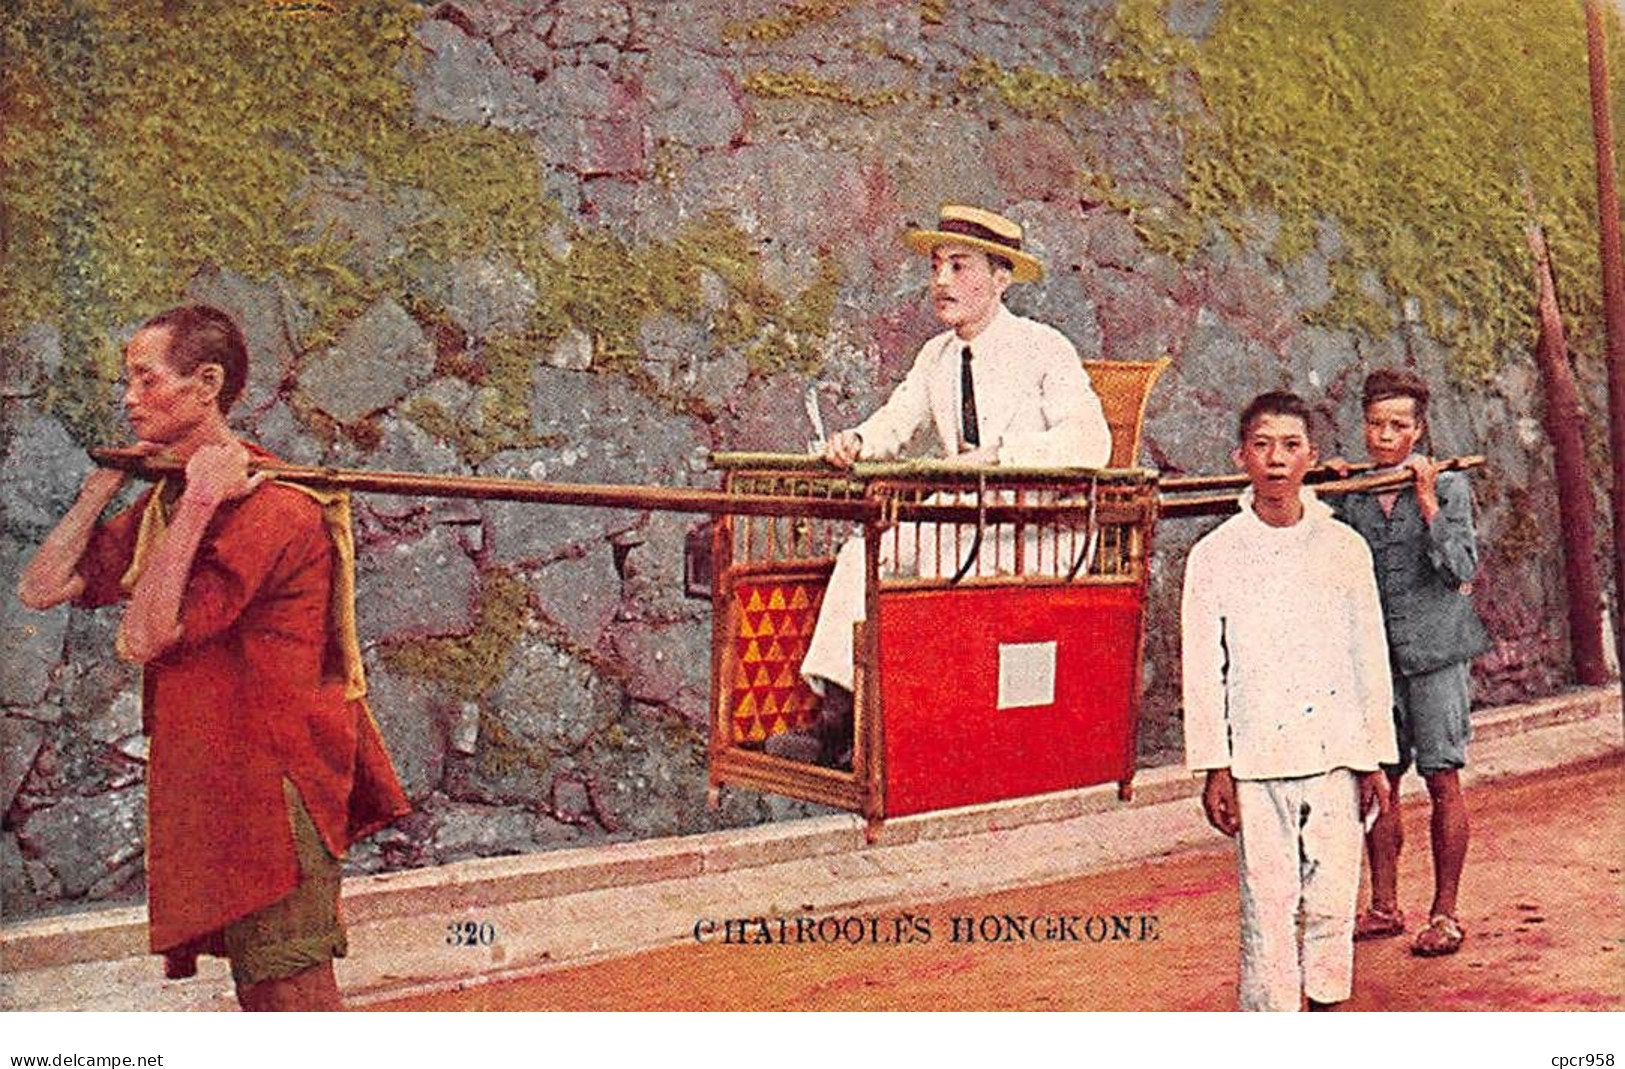 Chine - N°71866 - HONG-KONG - Chairooles - Chinois Portant Un Européen Dans Une Chaise à Porteurs - Chine (Hong Kong)